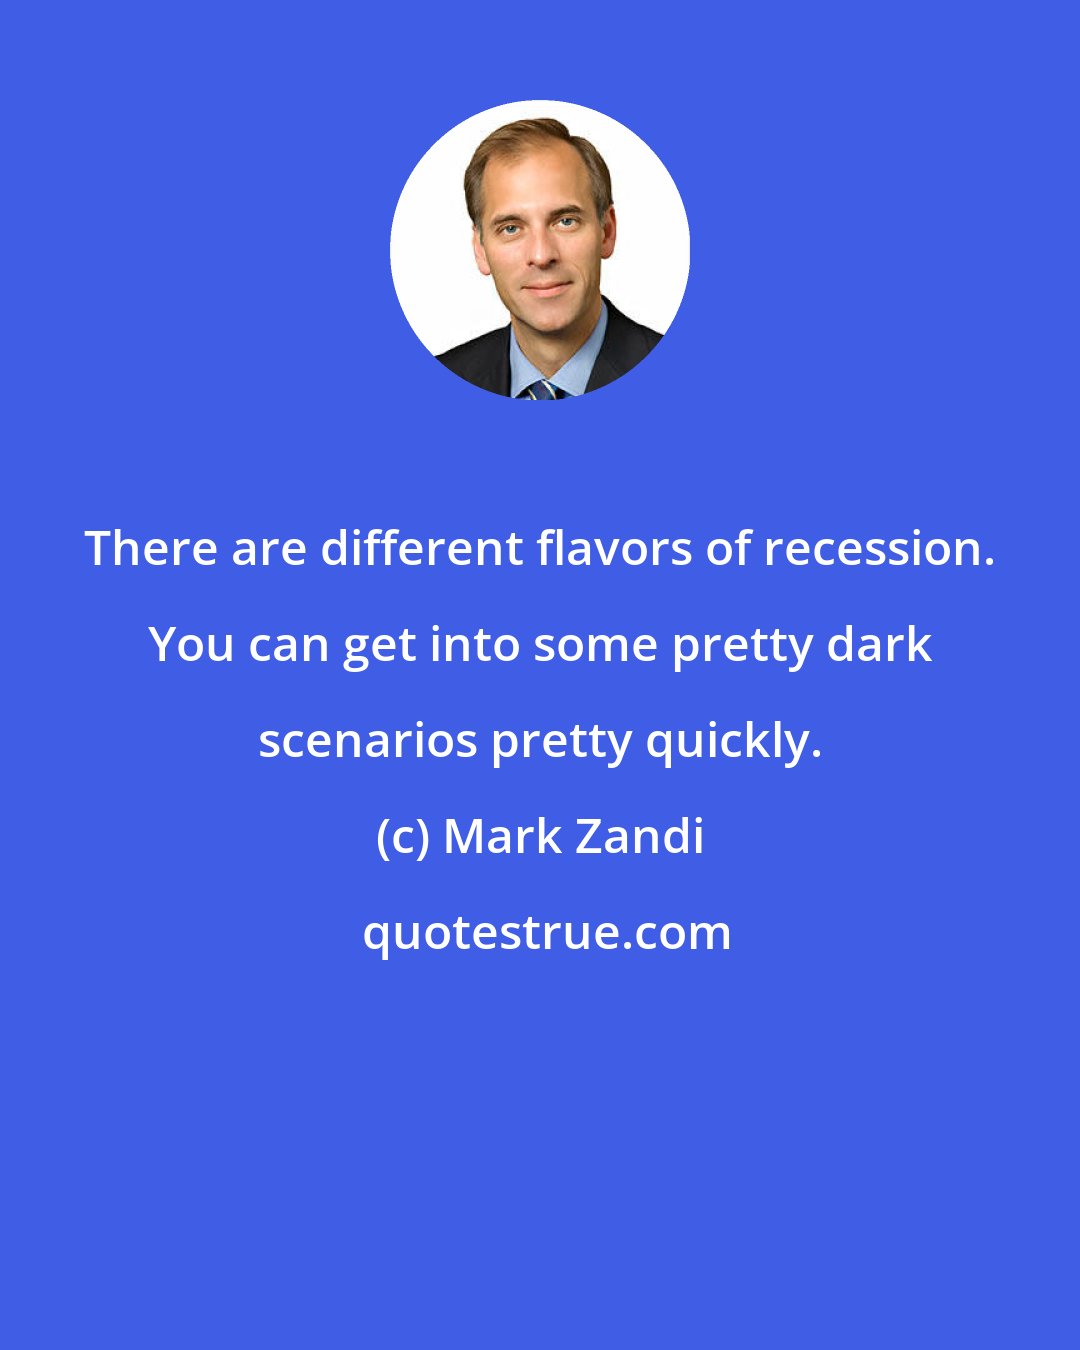 Mark Zandi: There are different flavors of recession. You can get into some pretty dark scenarios pretty quickly.